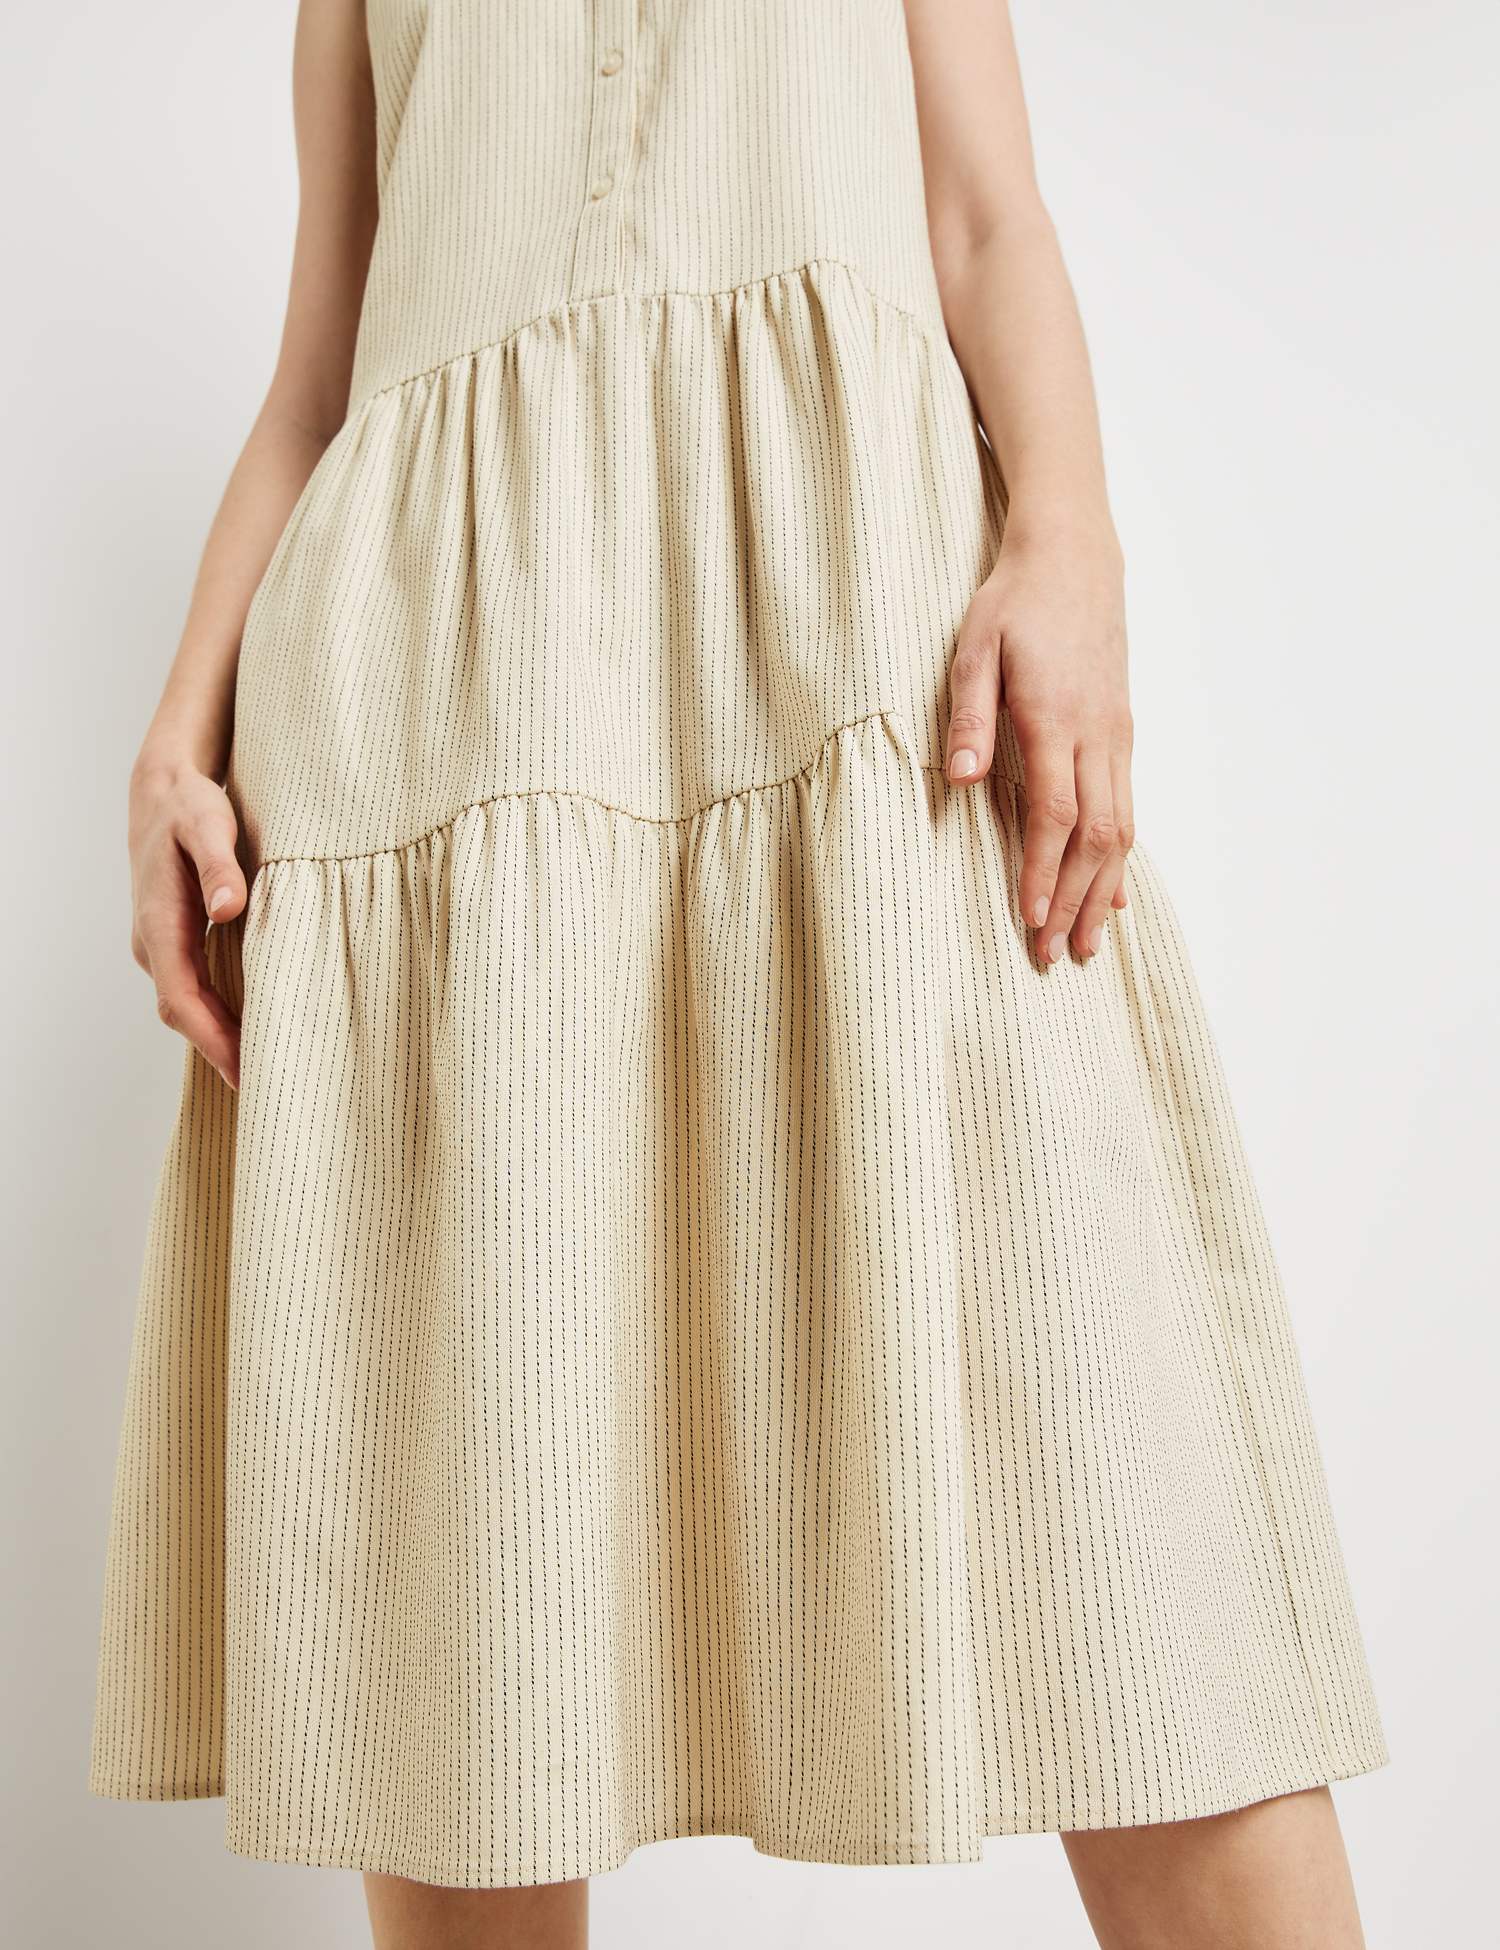 ärmelloses Sommerkleid aus Baumwoll-Leinen-Mix mit Streifenmuster